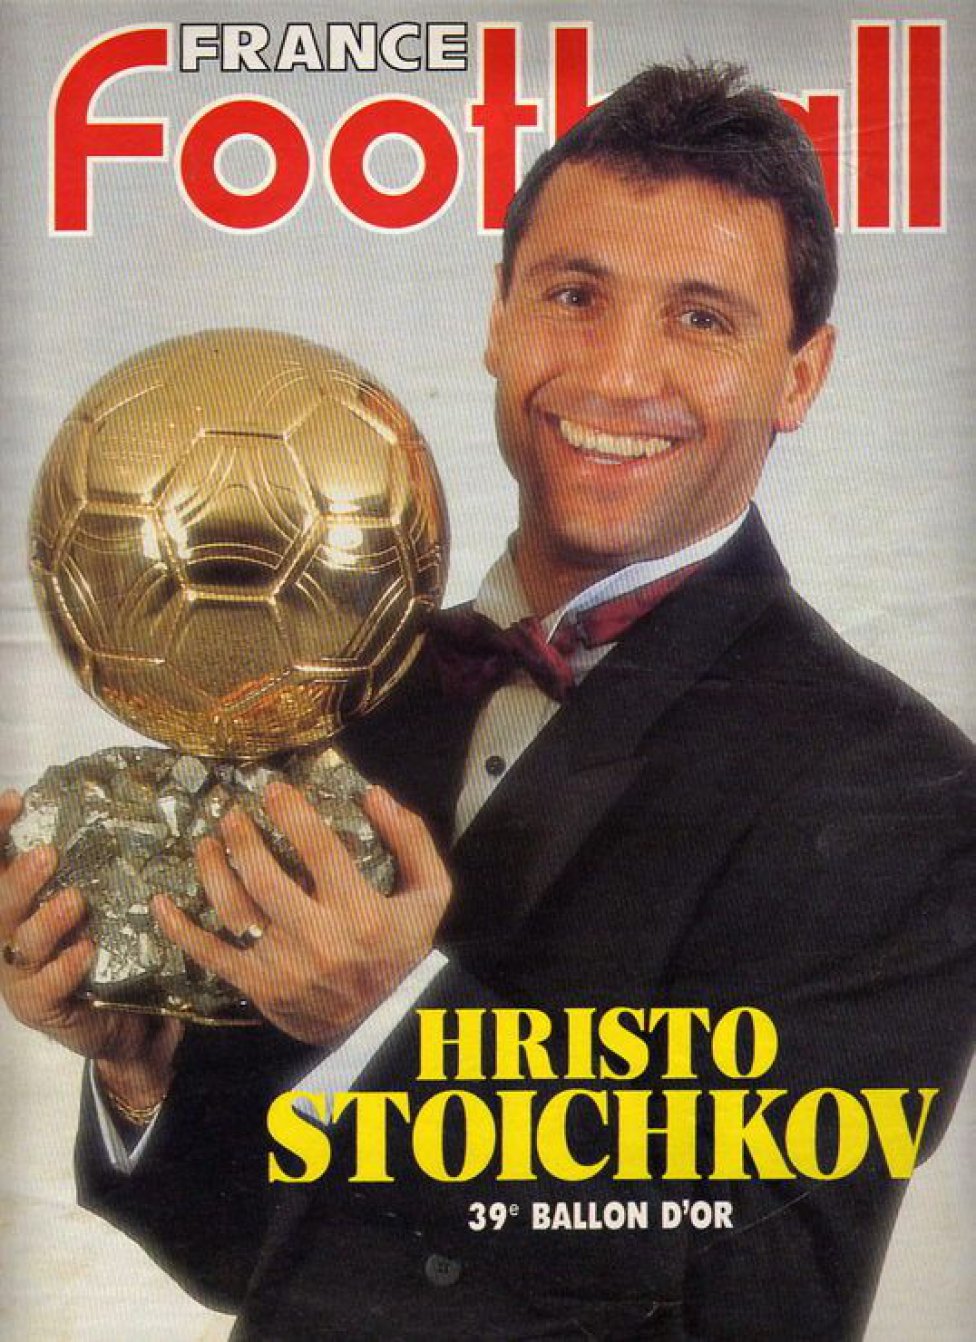 1994. Stoichkov